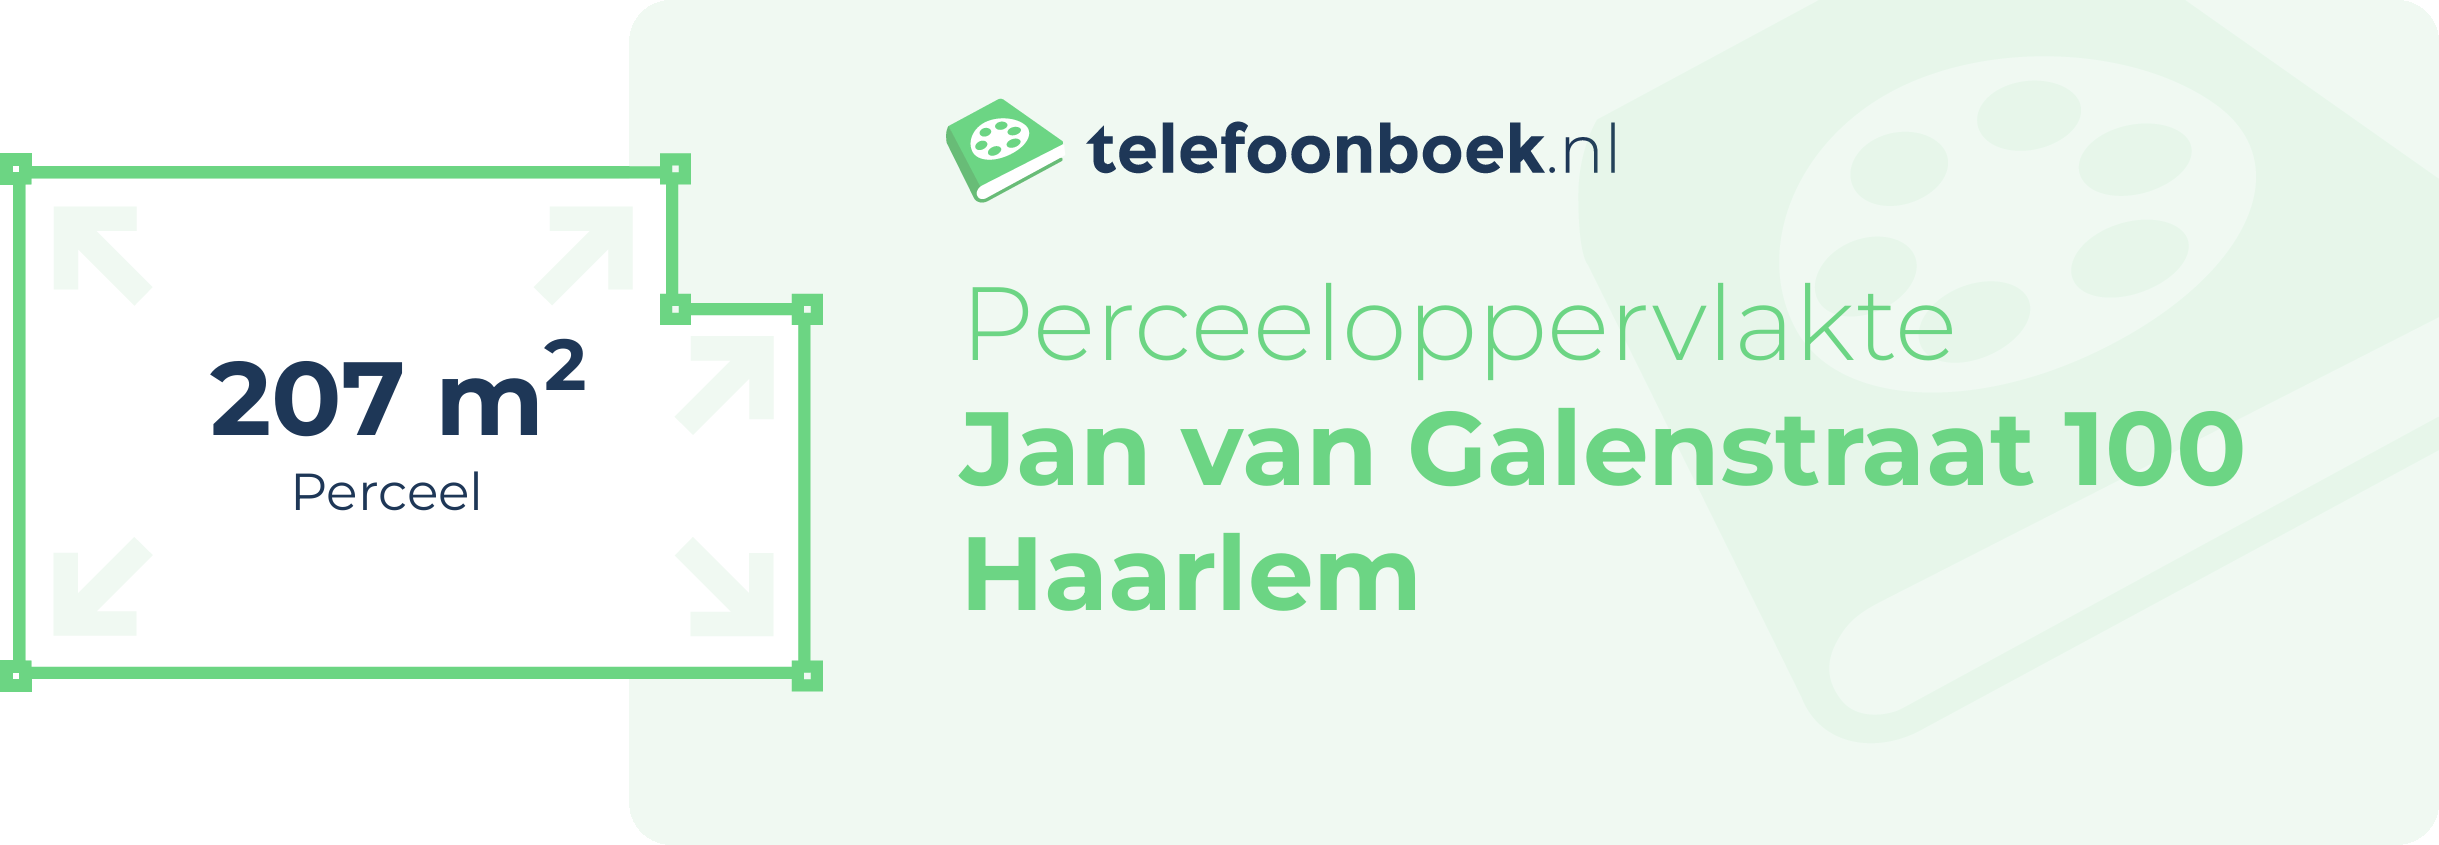 Perceeloppervlakte Jan Van Galenstraat 100 Haarlem